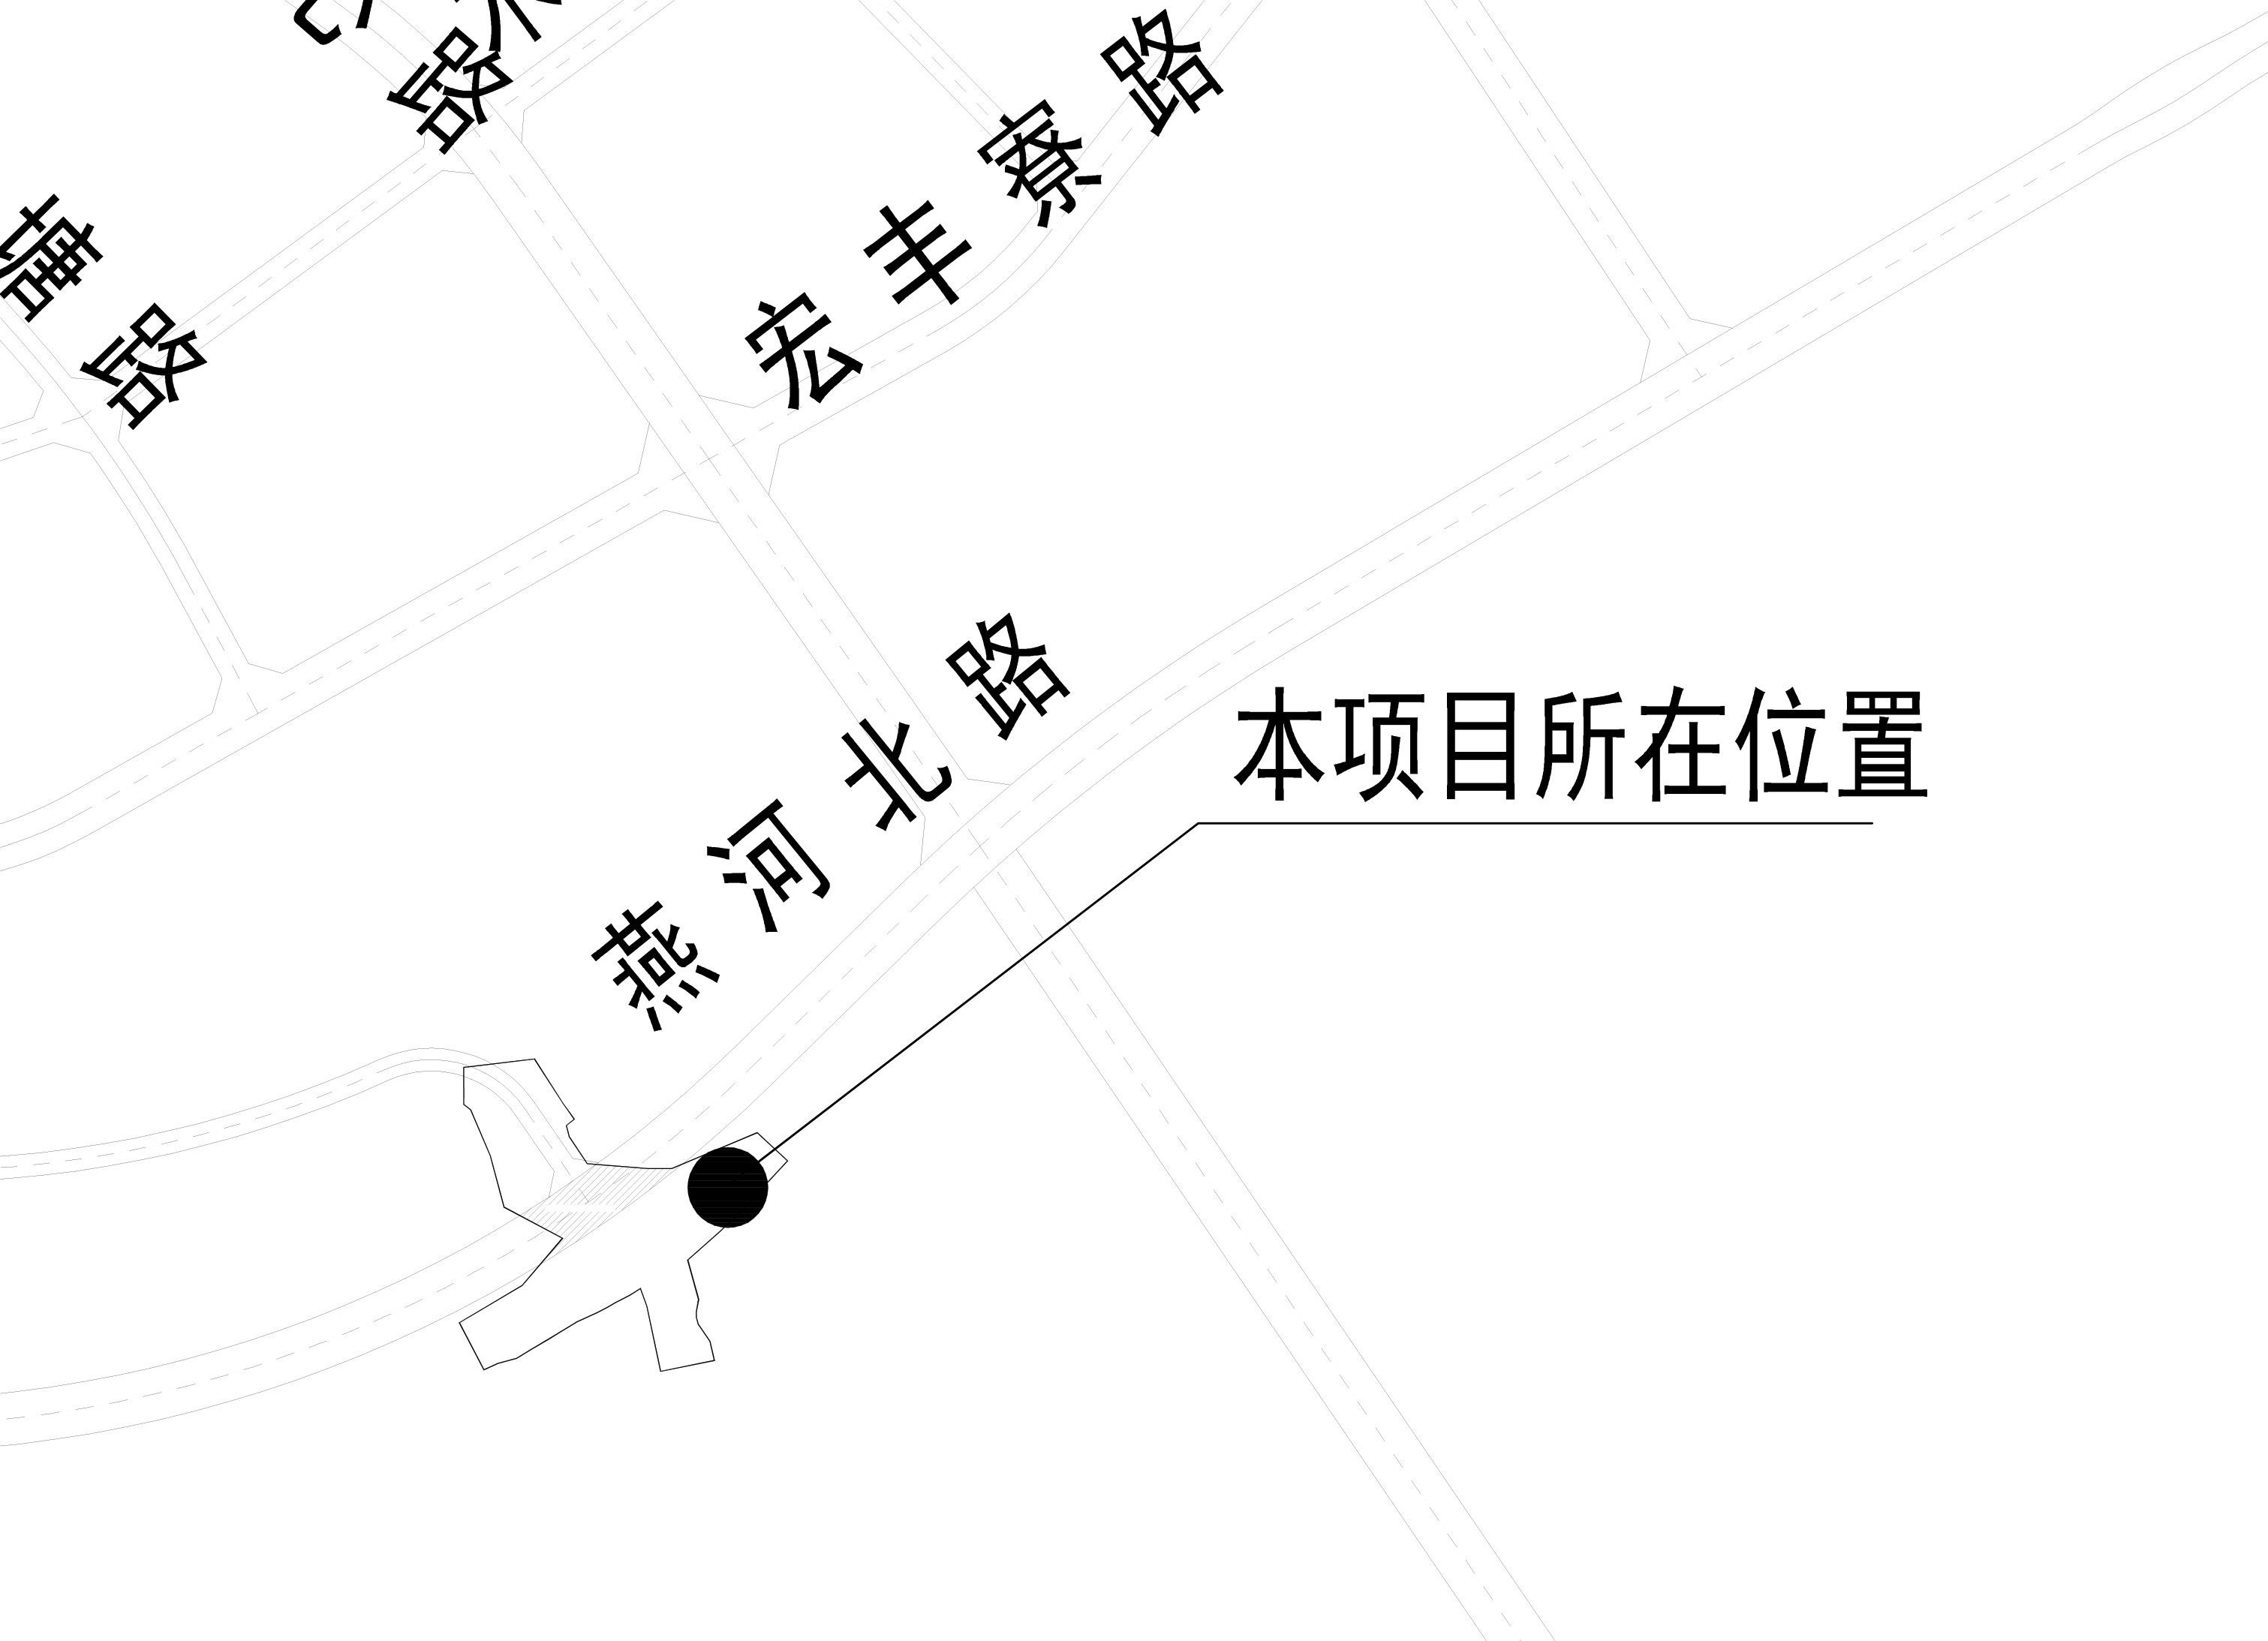 燕湖新城排涝工程区位图.jpg